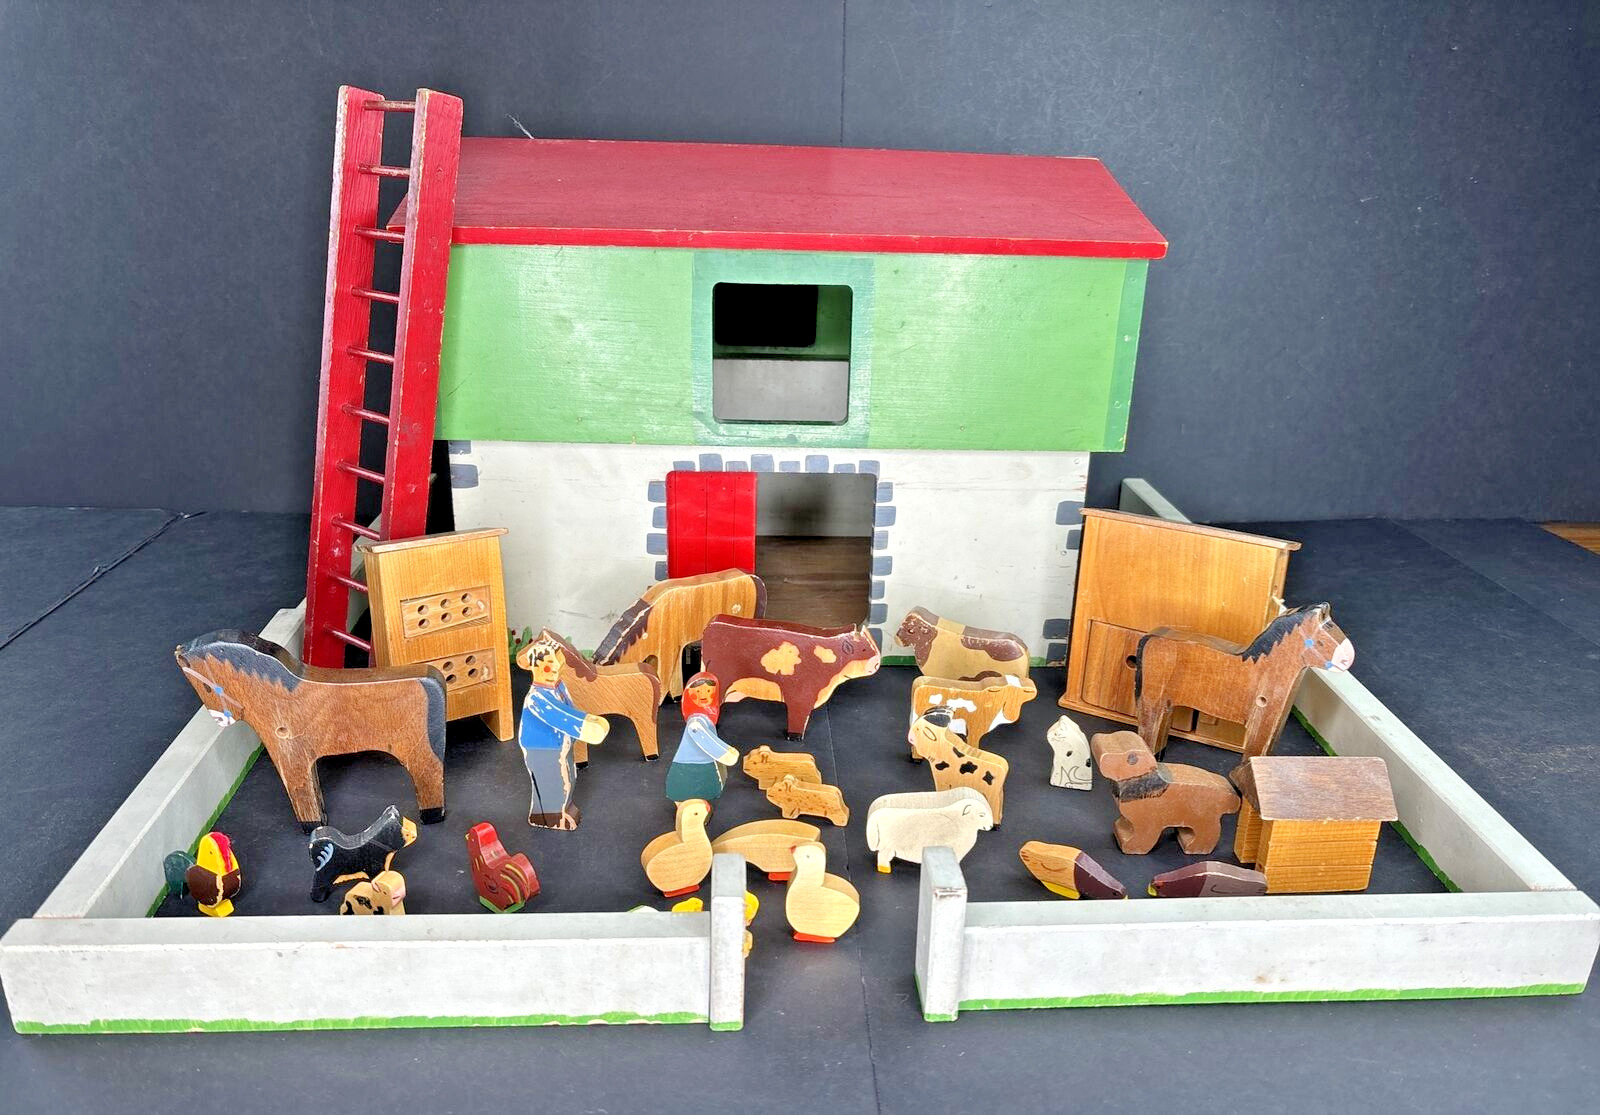 Antique Vintage Handmade Toy Wooden Barn with Loft Animals Accessories Folk Art